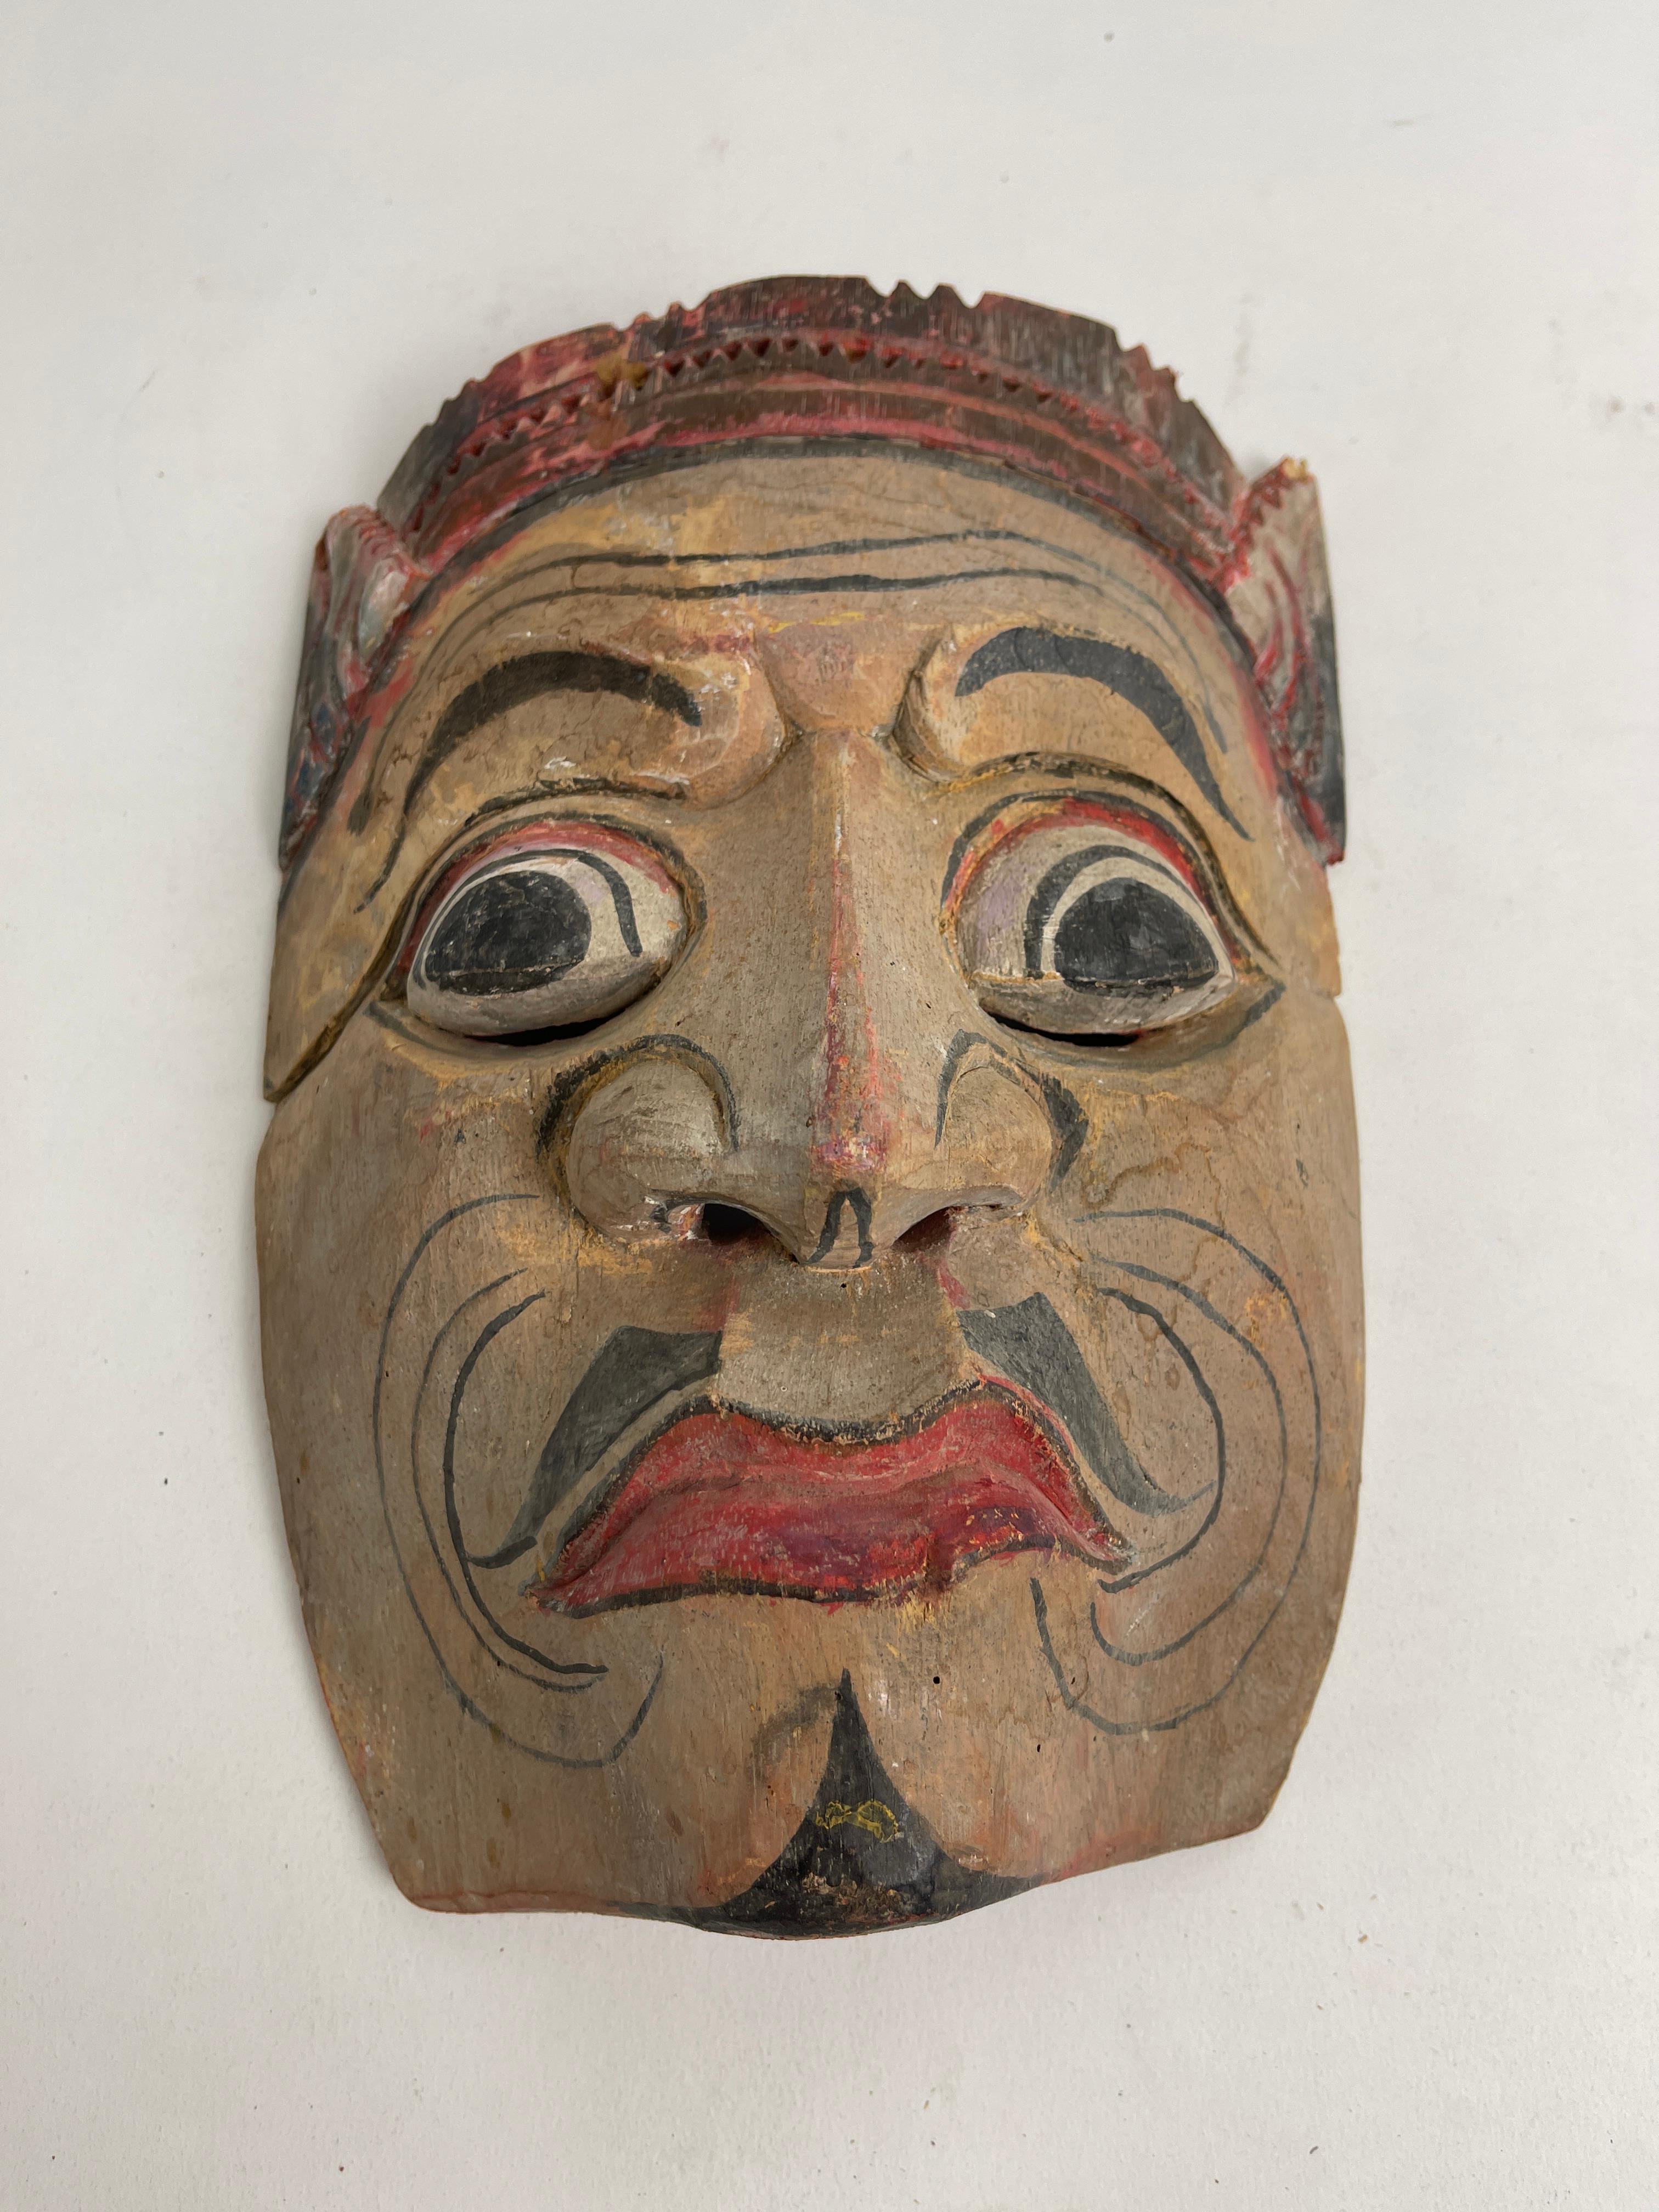 Vintage Arabian Wood Hand Carved Mask